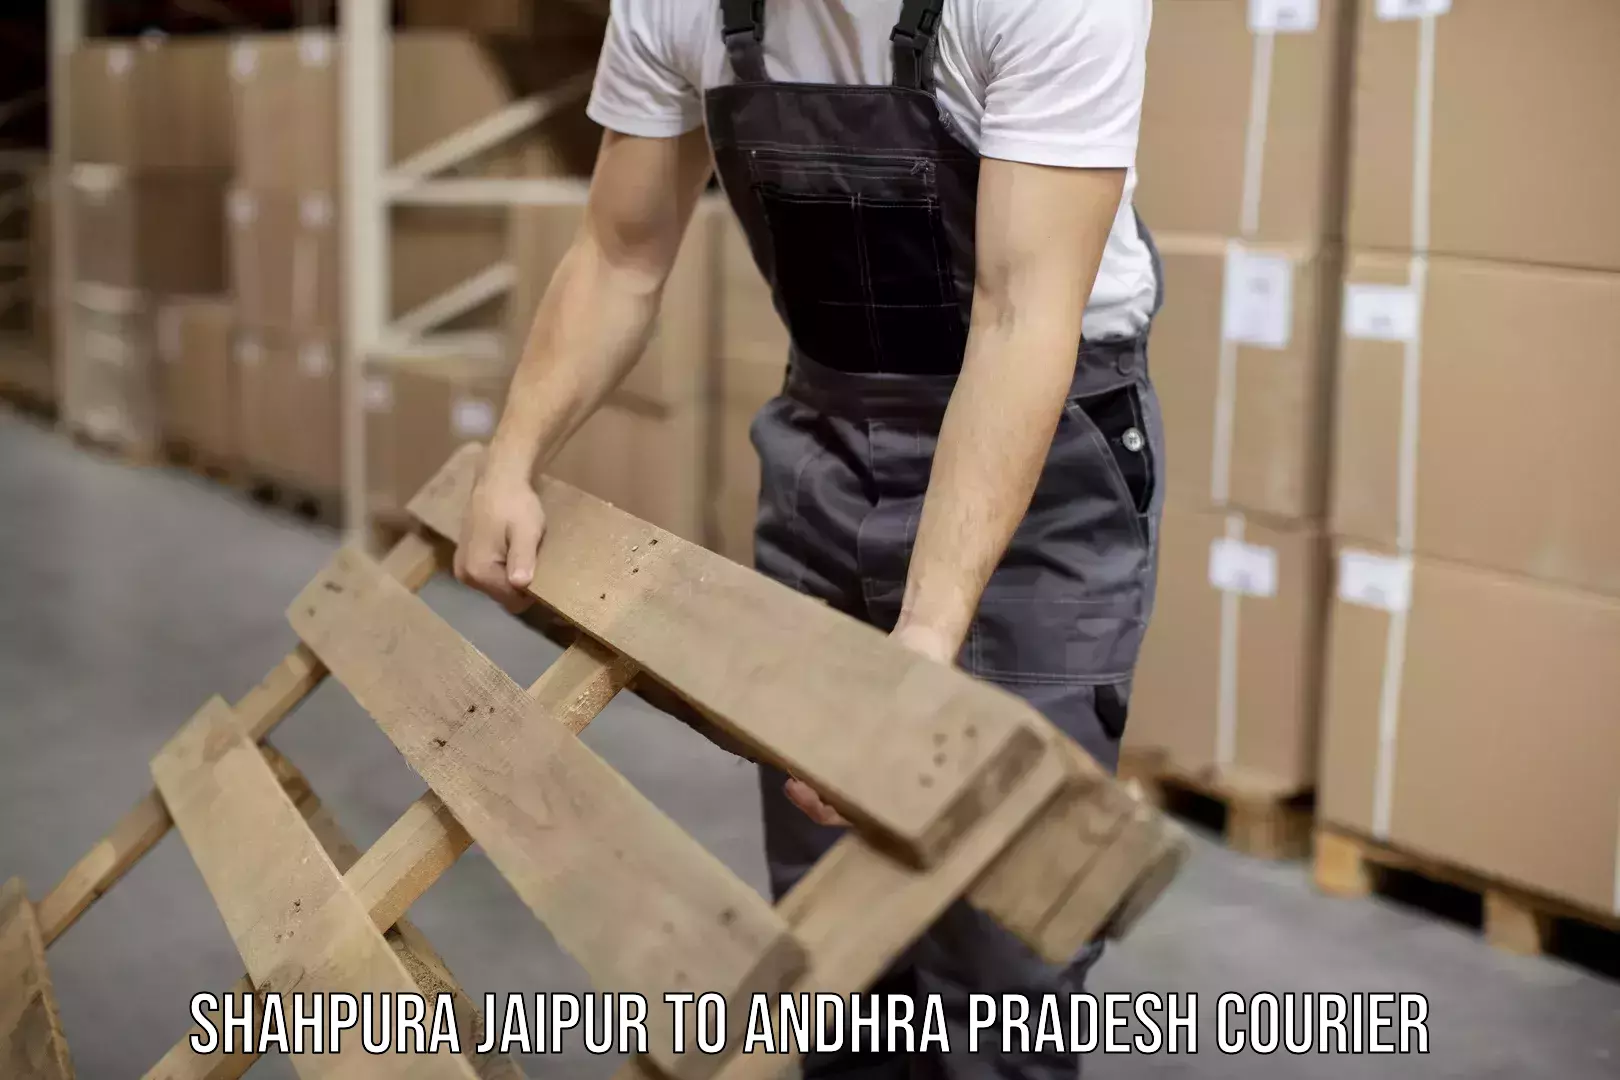 Special handling courier Shahpura Jaipur to Andhra Pradesh